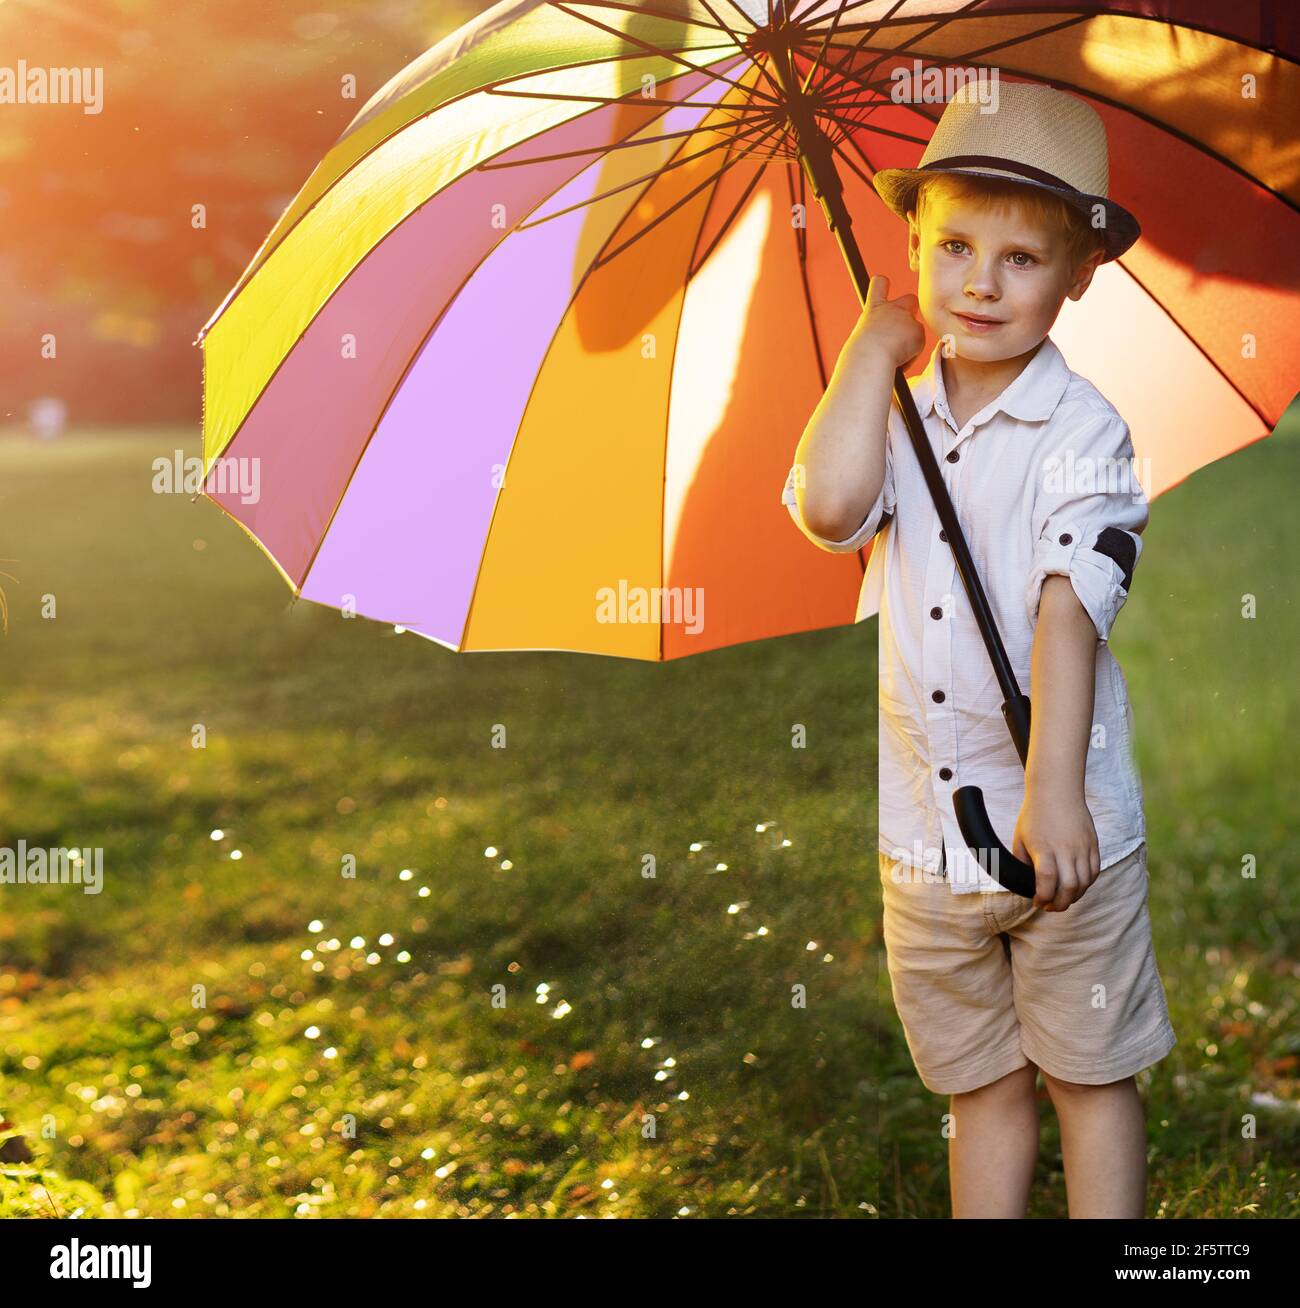 Lindo, pequeño, sosteniendo un paraguas enorme y colorido Foto de stock